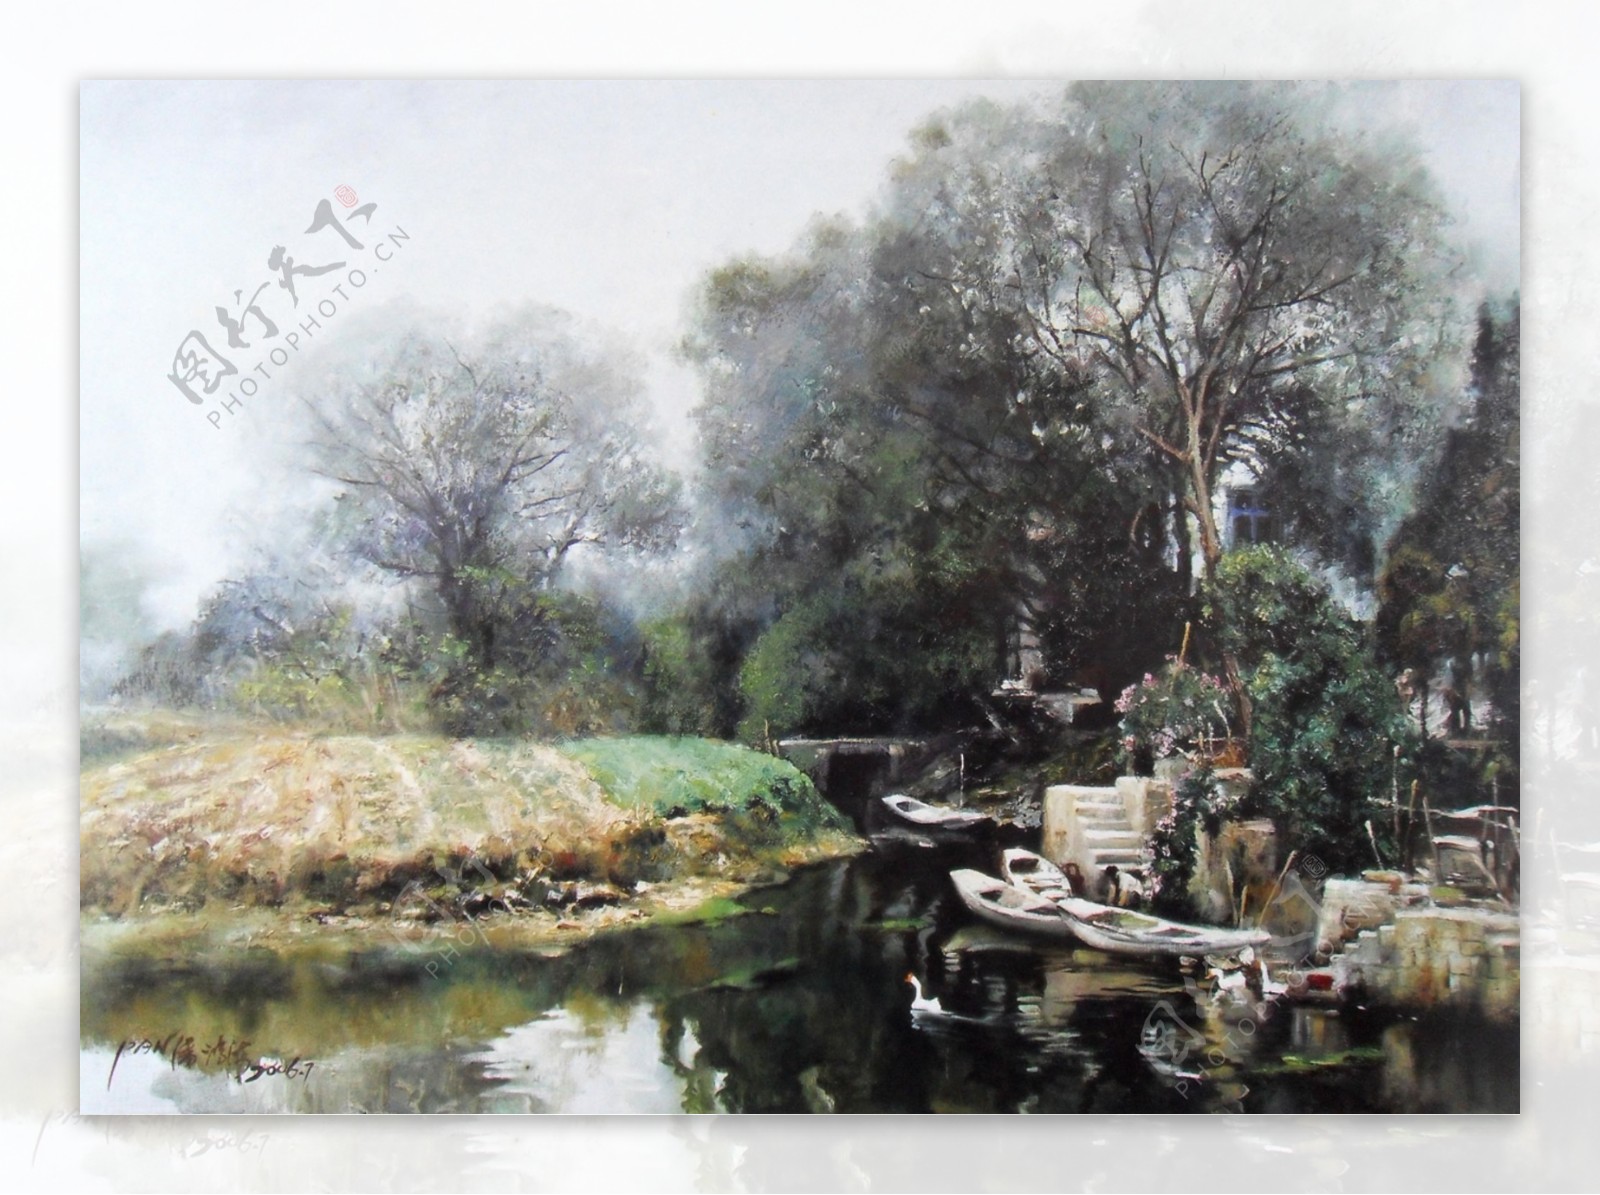 169961风景建筑田园植物水景田园印象画派写实主义油画装饰画